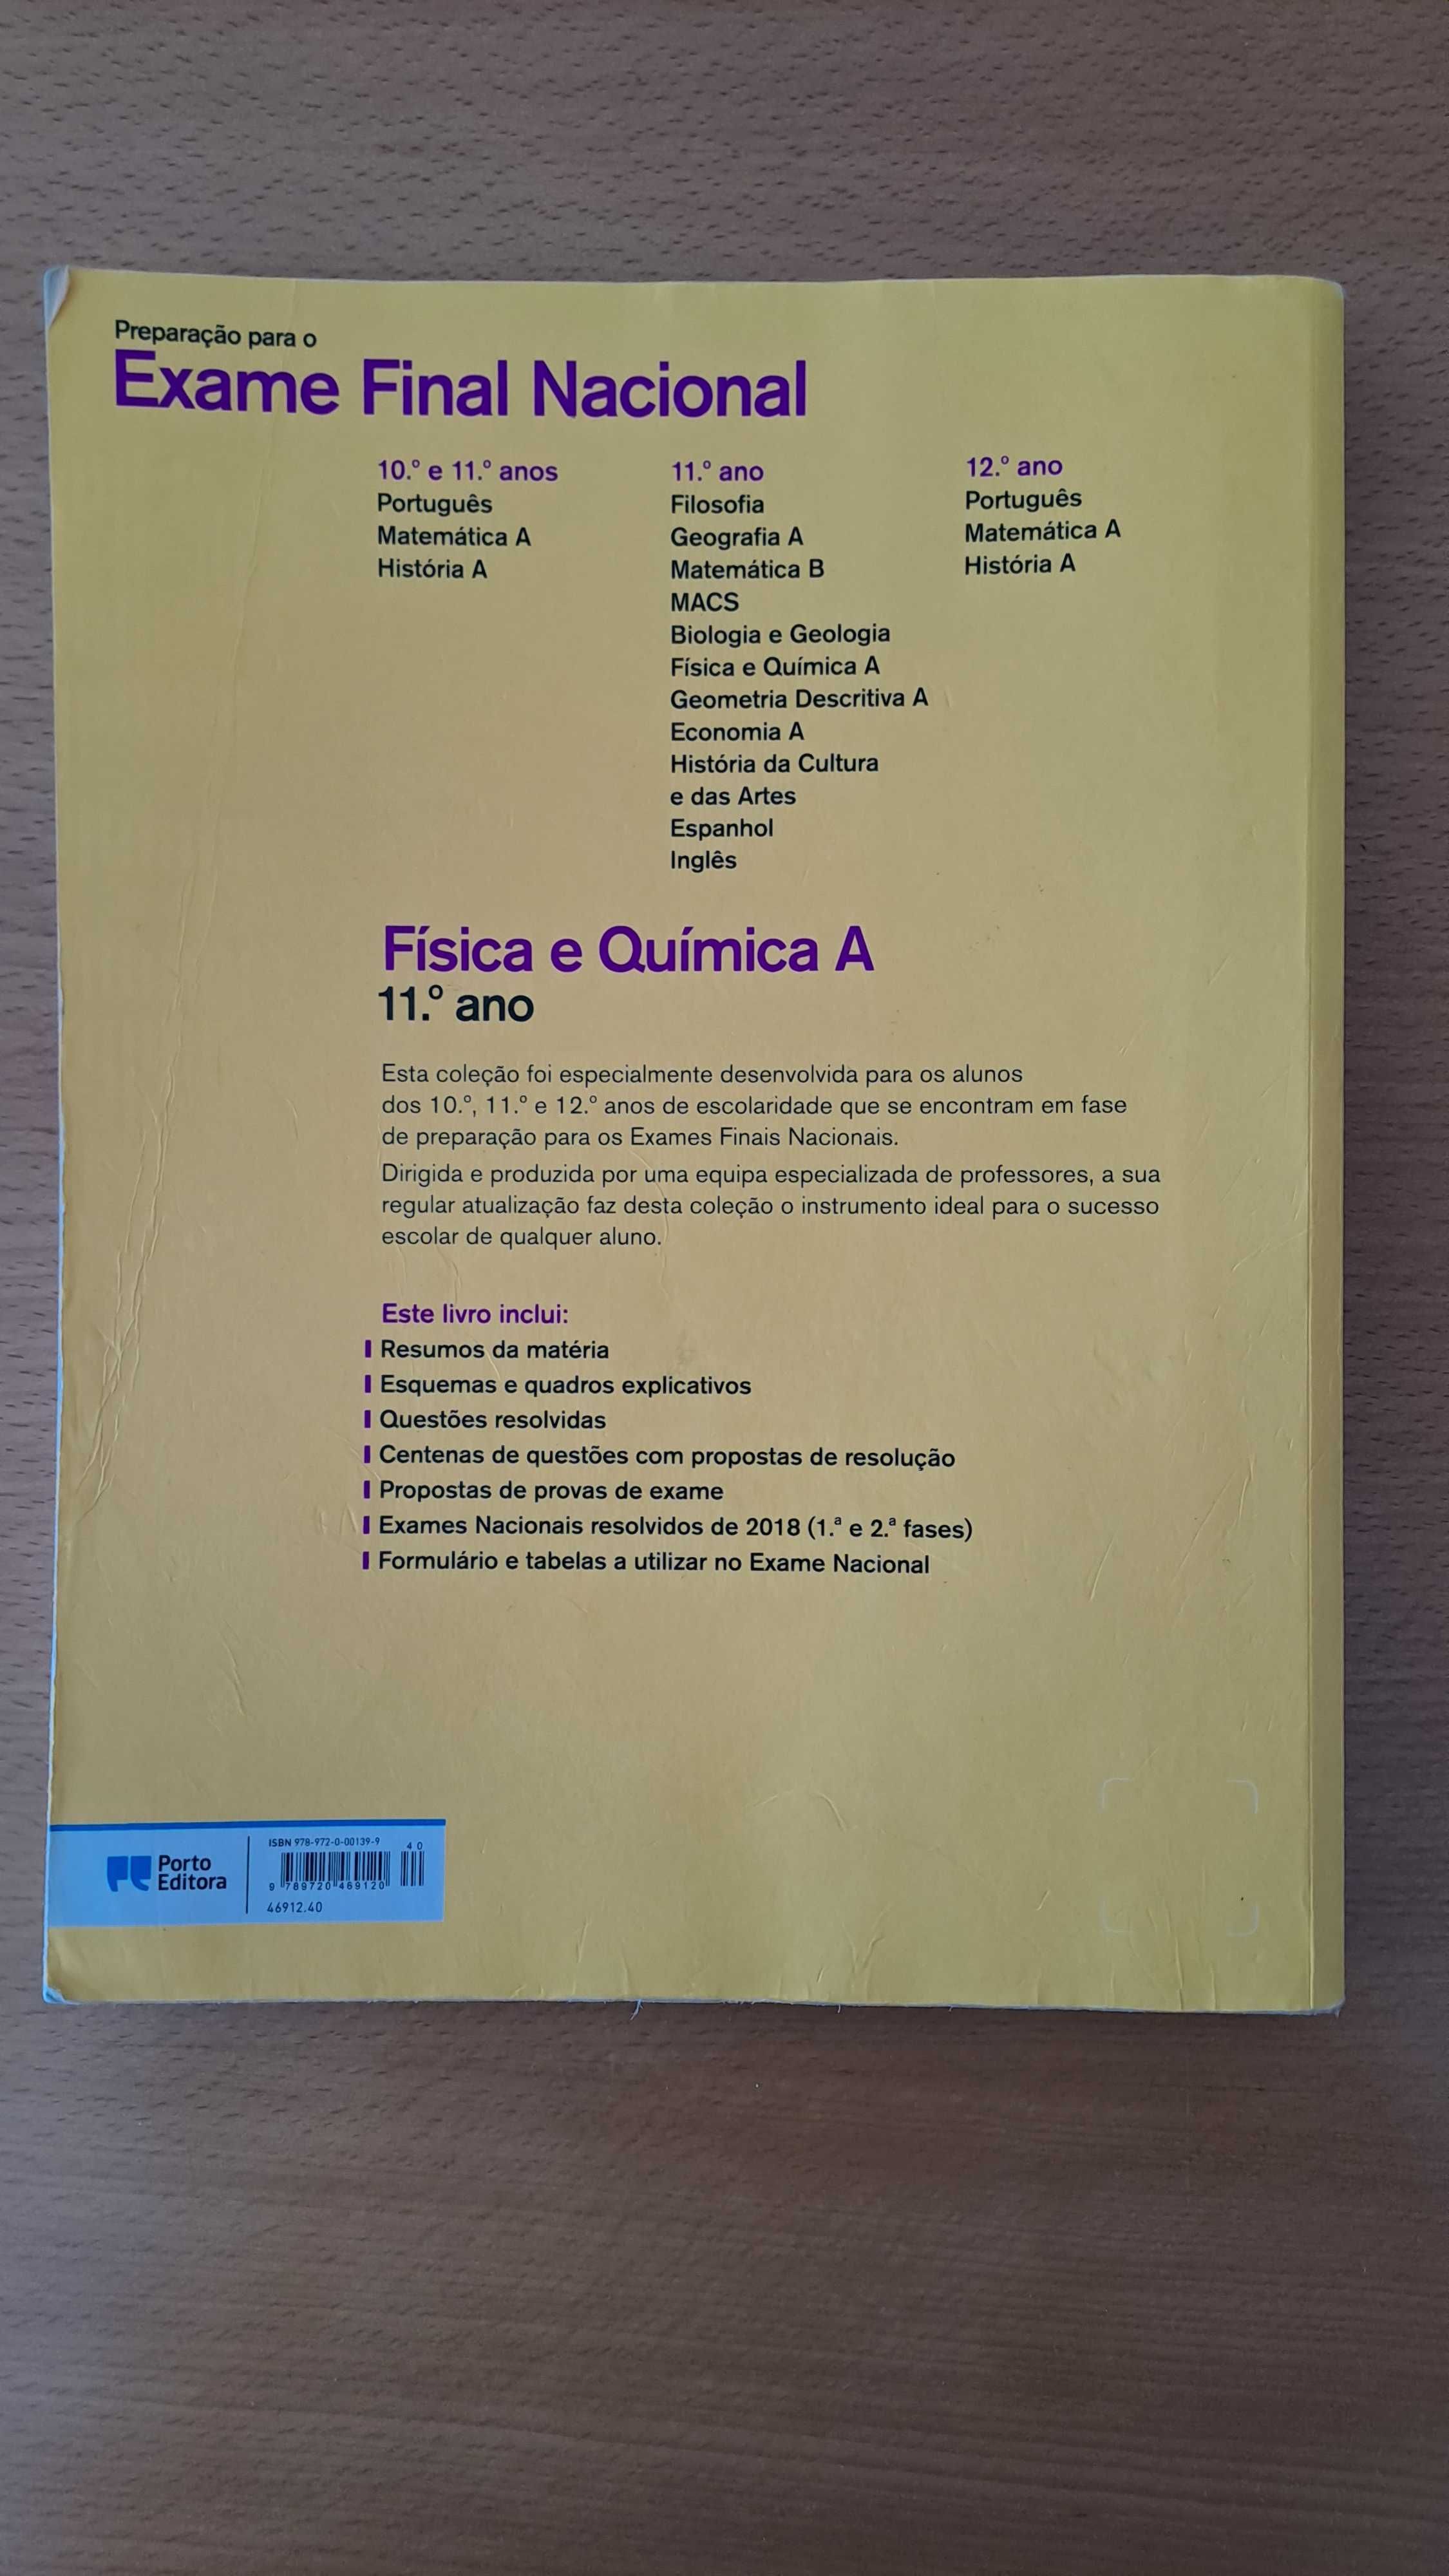 Livro de preparação para o exame final de Física e Quimica A